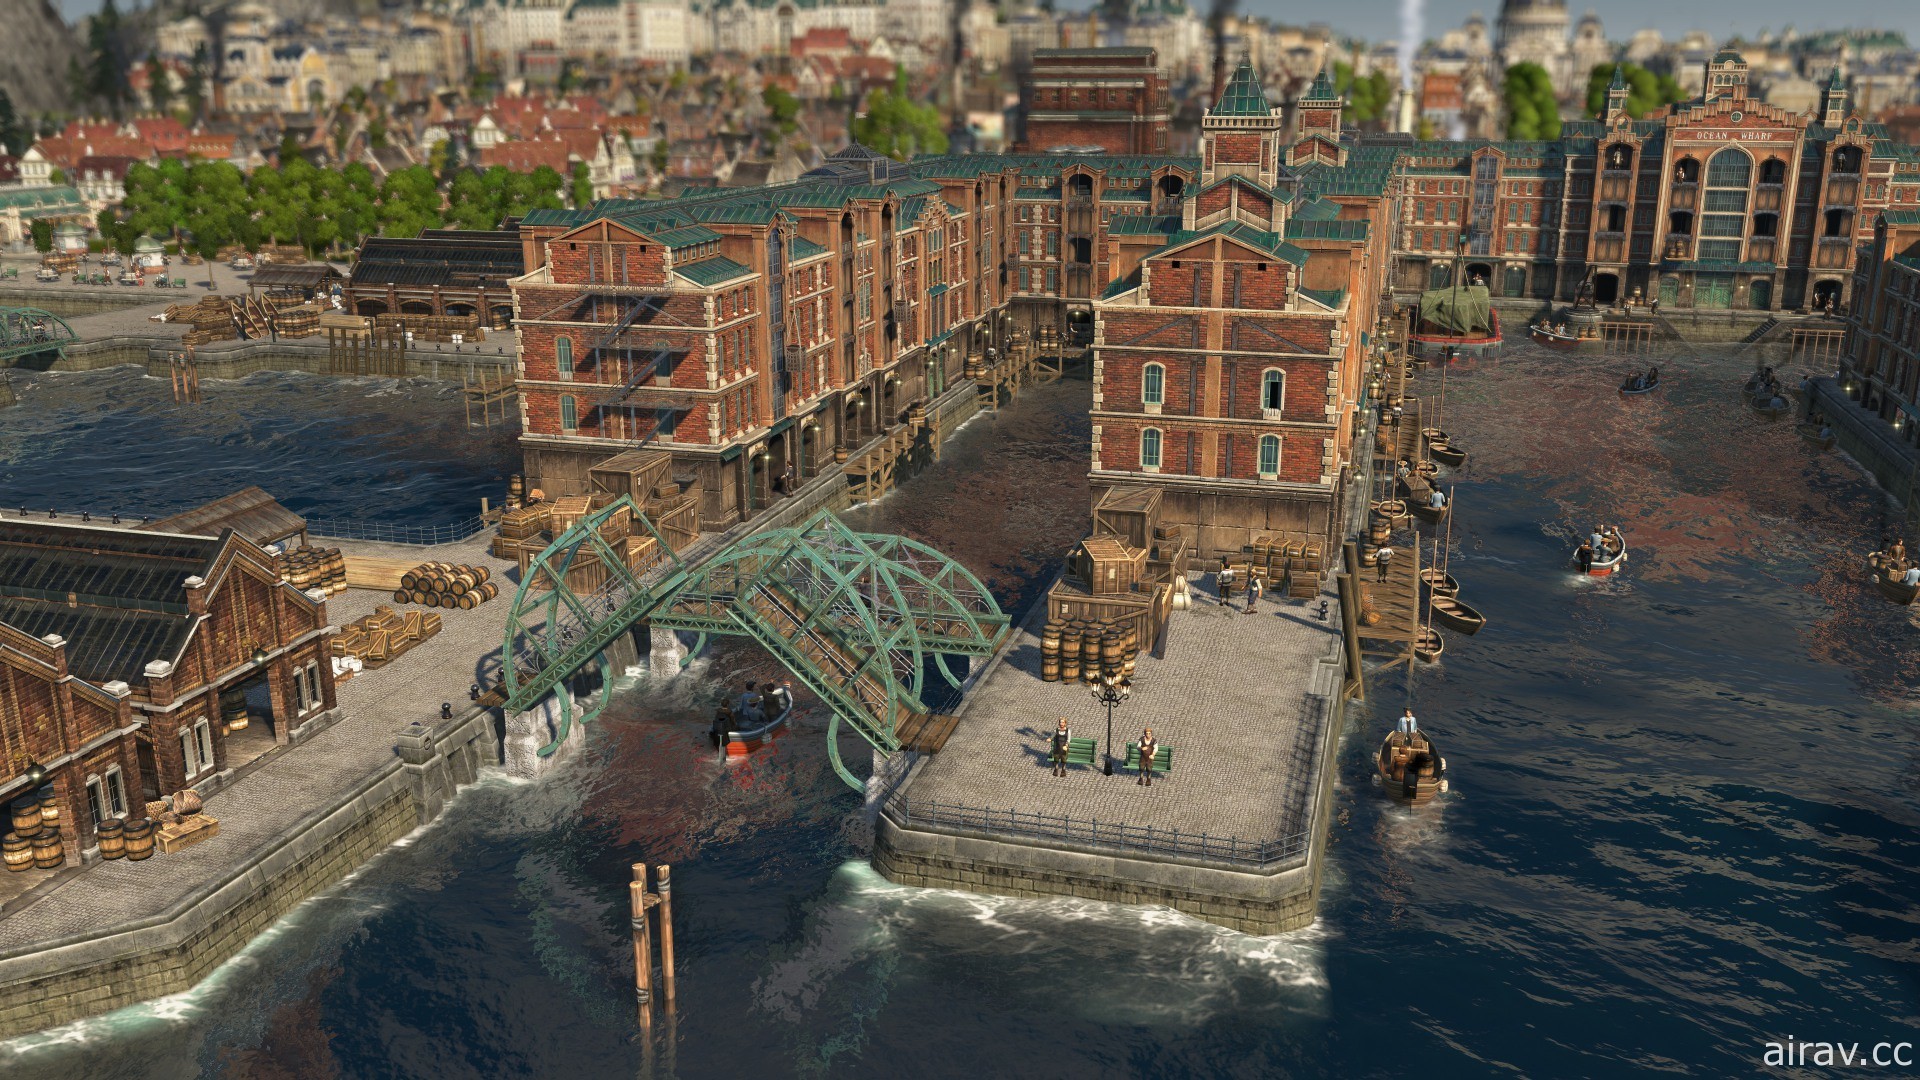 《美丽新世界 1800》第 3 季首个 DLC“港湾风情”上线 周末开放限时免费游玩